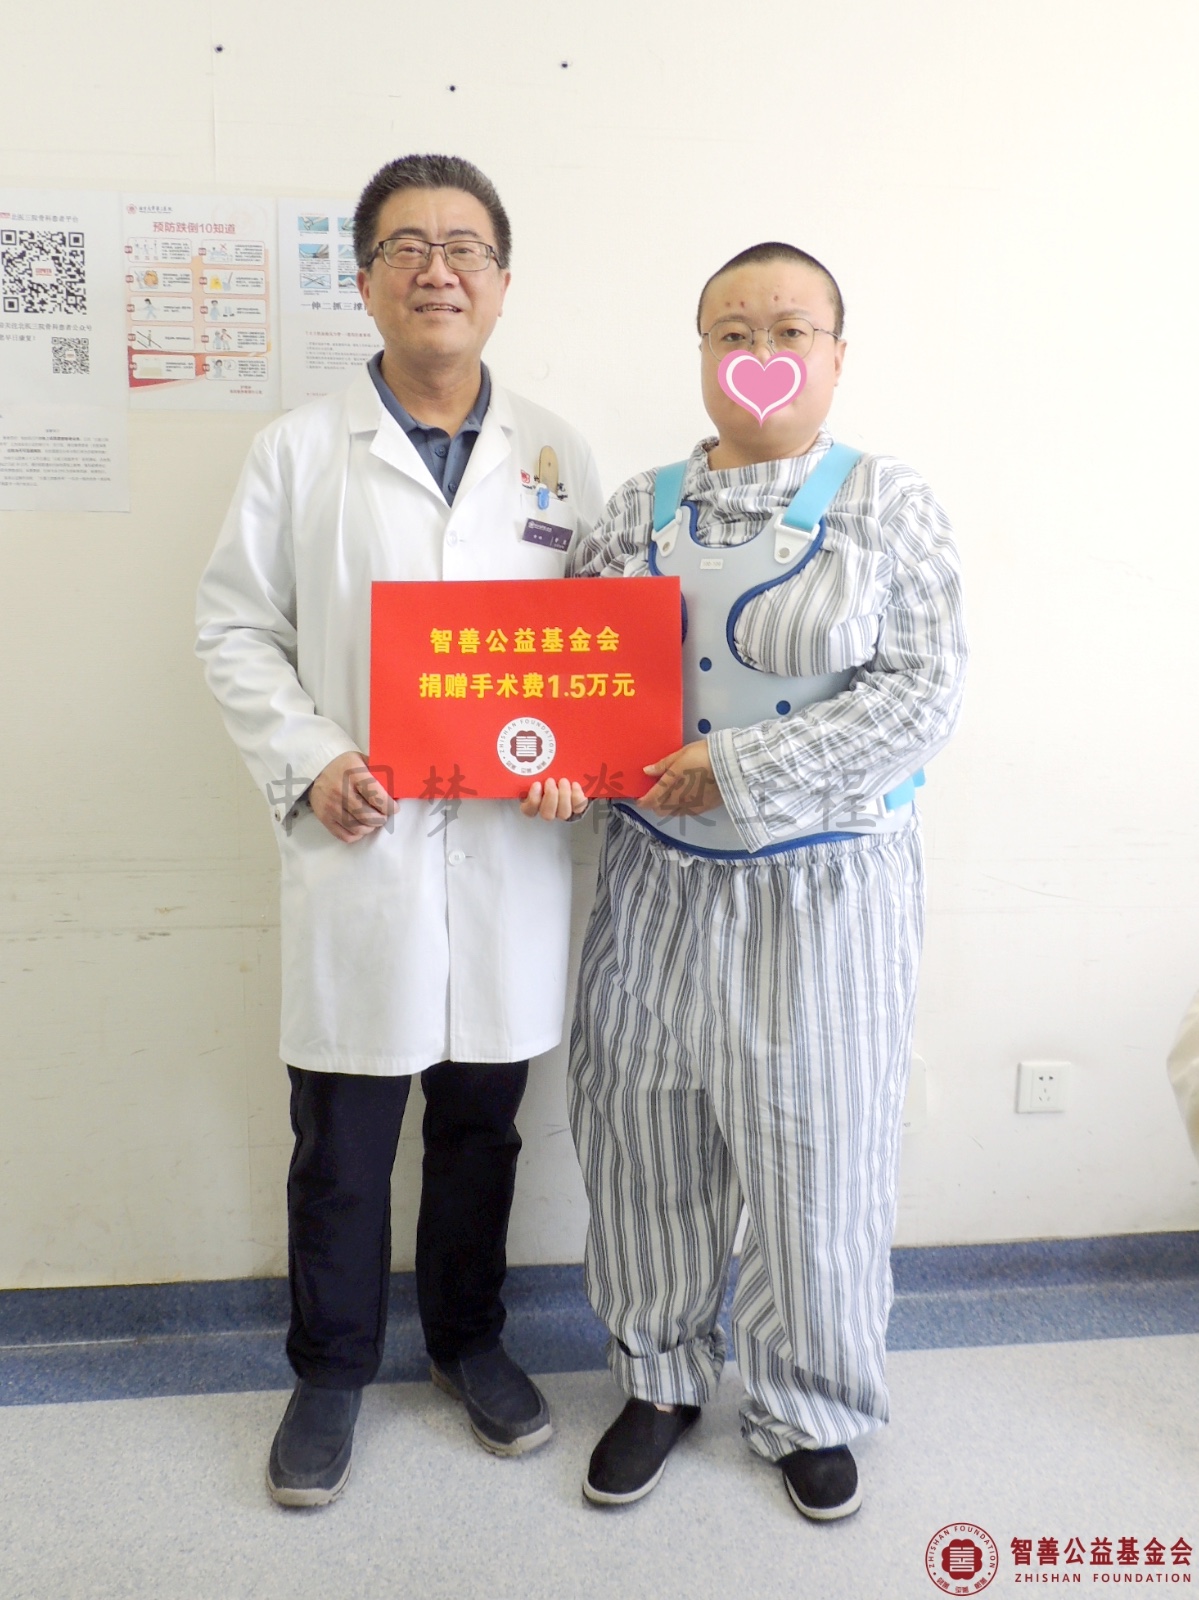 6 北京大学第三医院曾岩主任将智善公益基金会捐赠的1.5万元转交给内蒙古乌海海勃湾区患者小刘.jpg